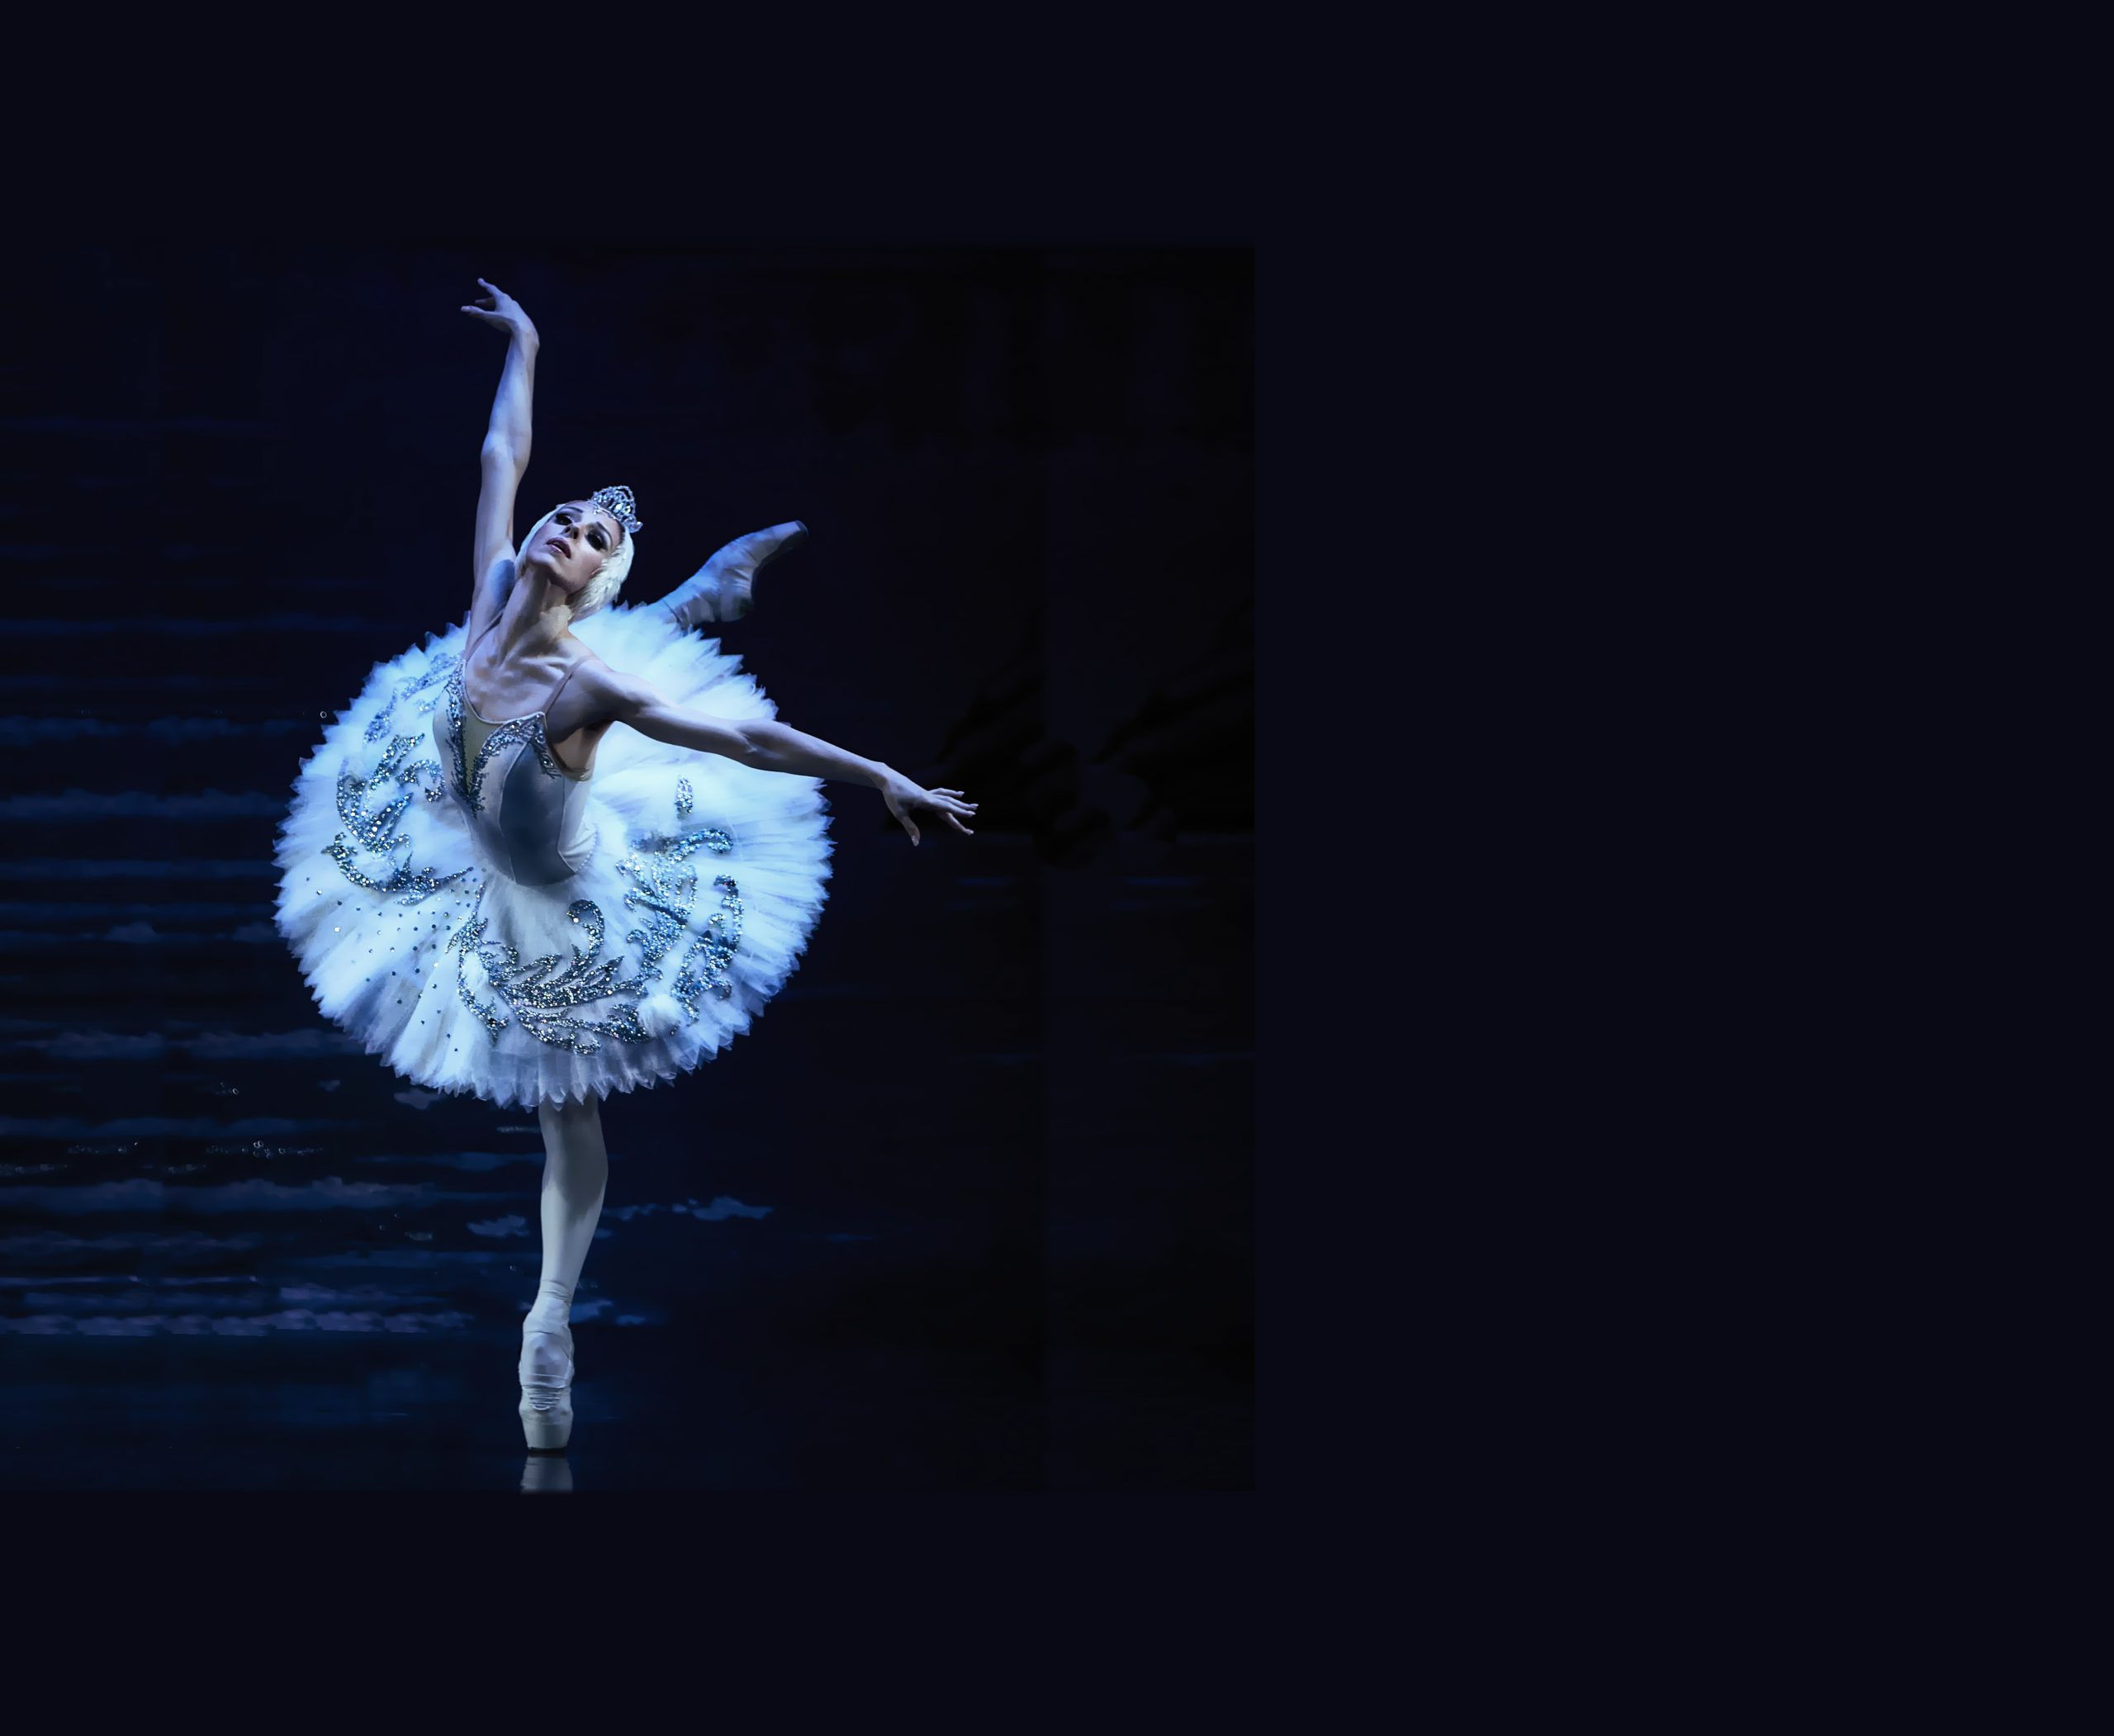 El Ballet Clásico Internacional presenta “El lago de los cisnes”, la obra por excelencia del ballet clásico universal 1